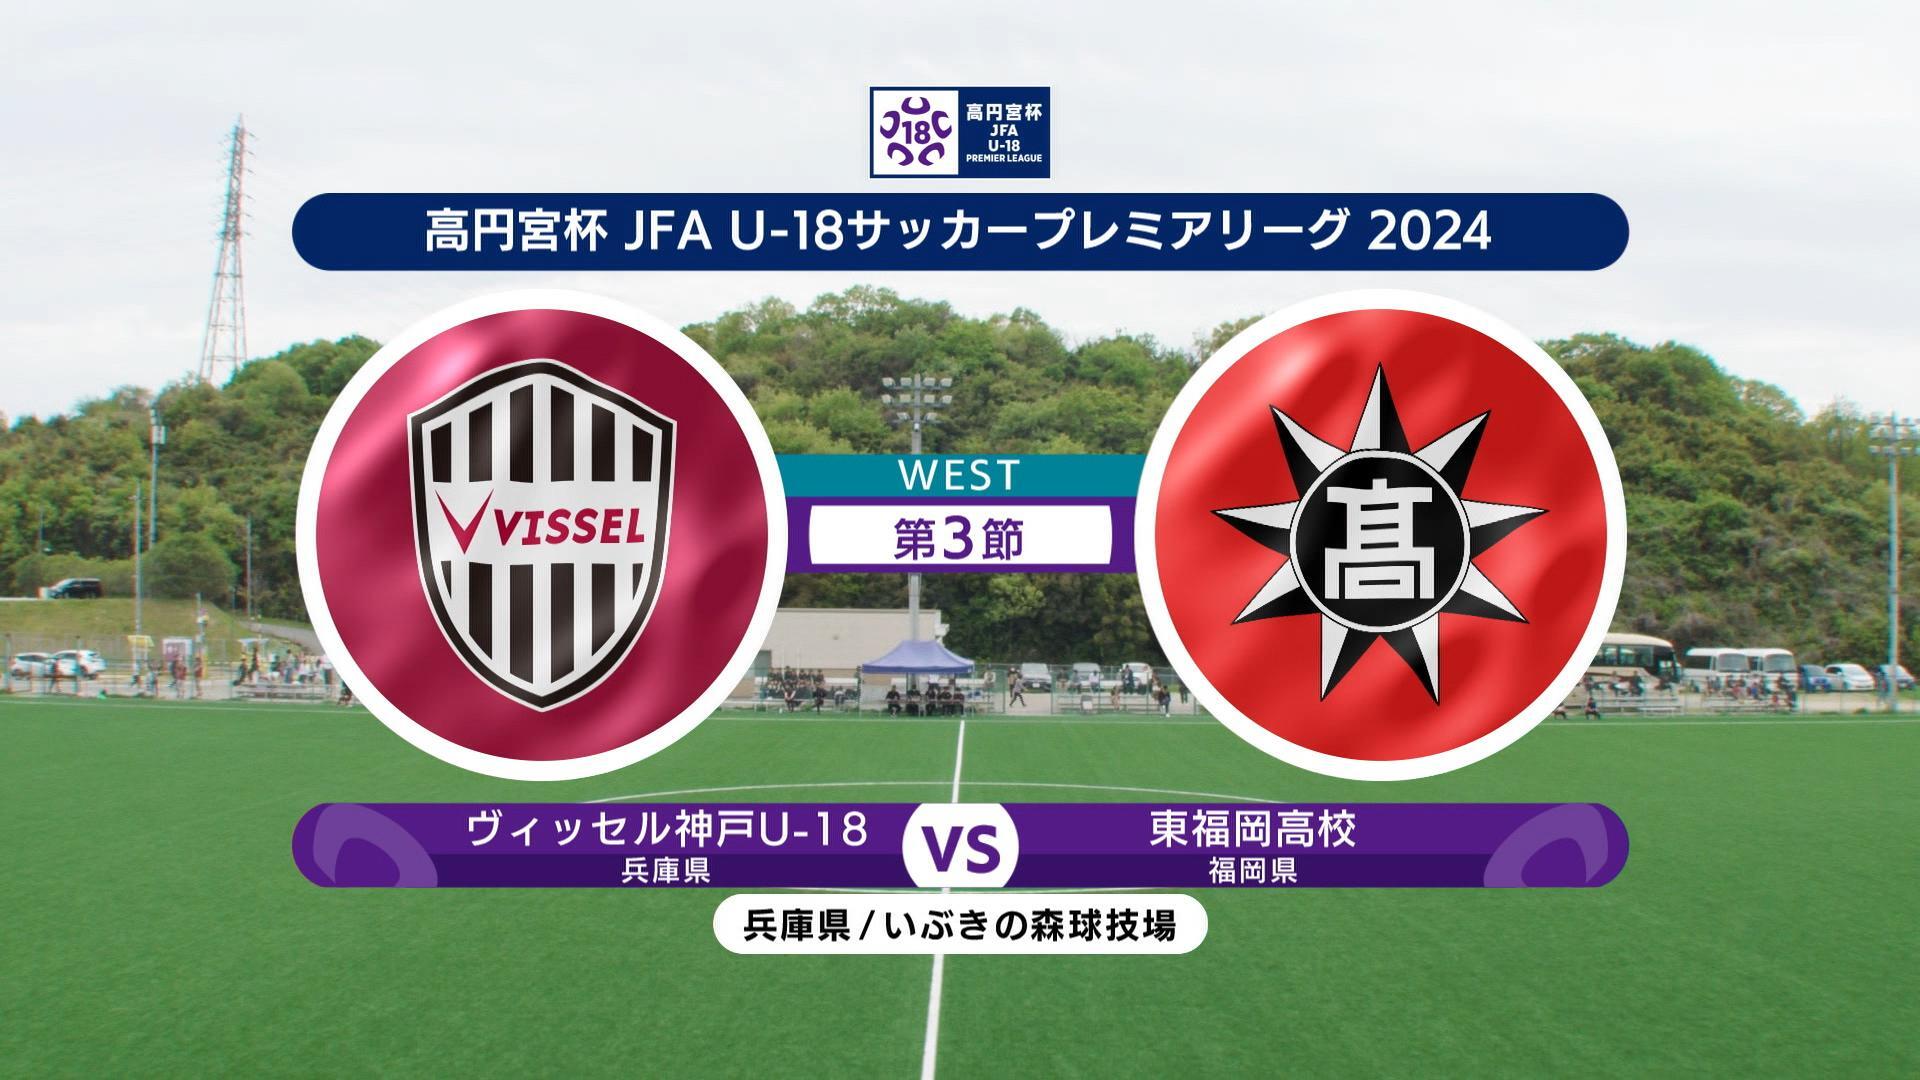 【ハイライト】ヴィッセル神戸U-18 vs. 東福岡高校